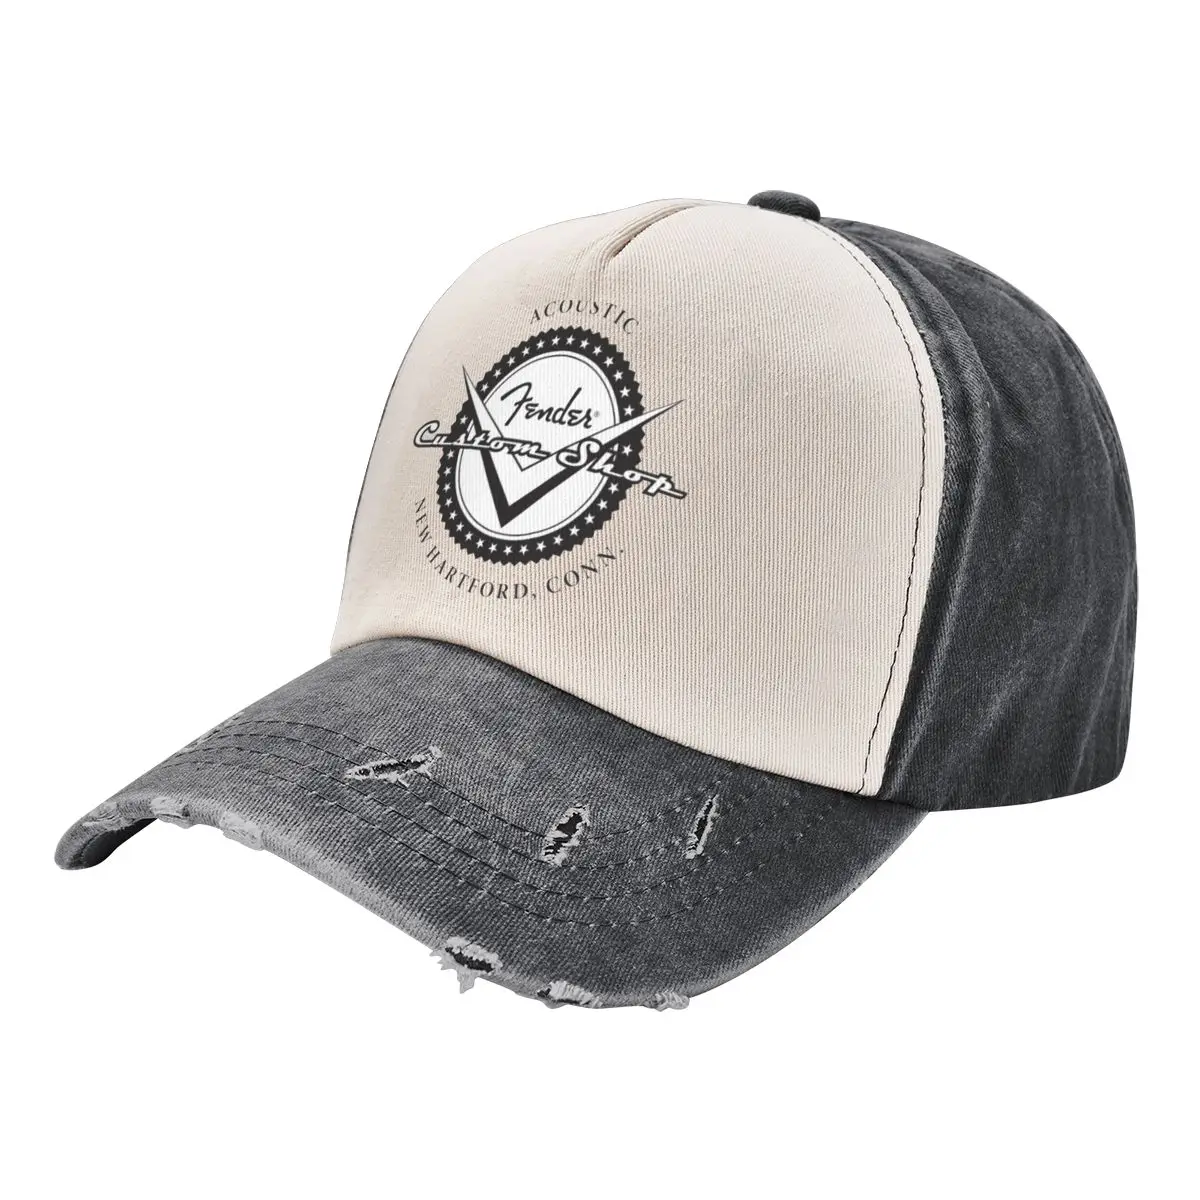 

Fender Casquette Washed Baseball Cap for Men Women Adjustable Distressed Denim Hat Dad Hat Trucker Hat